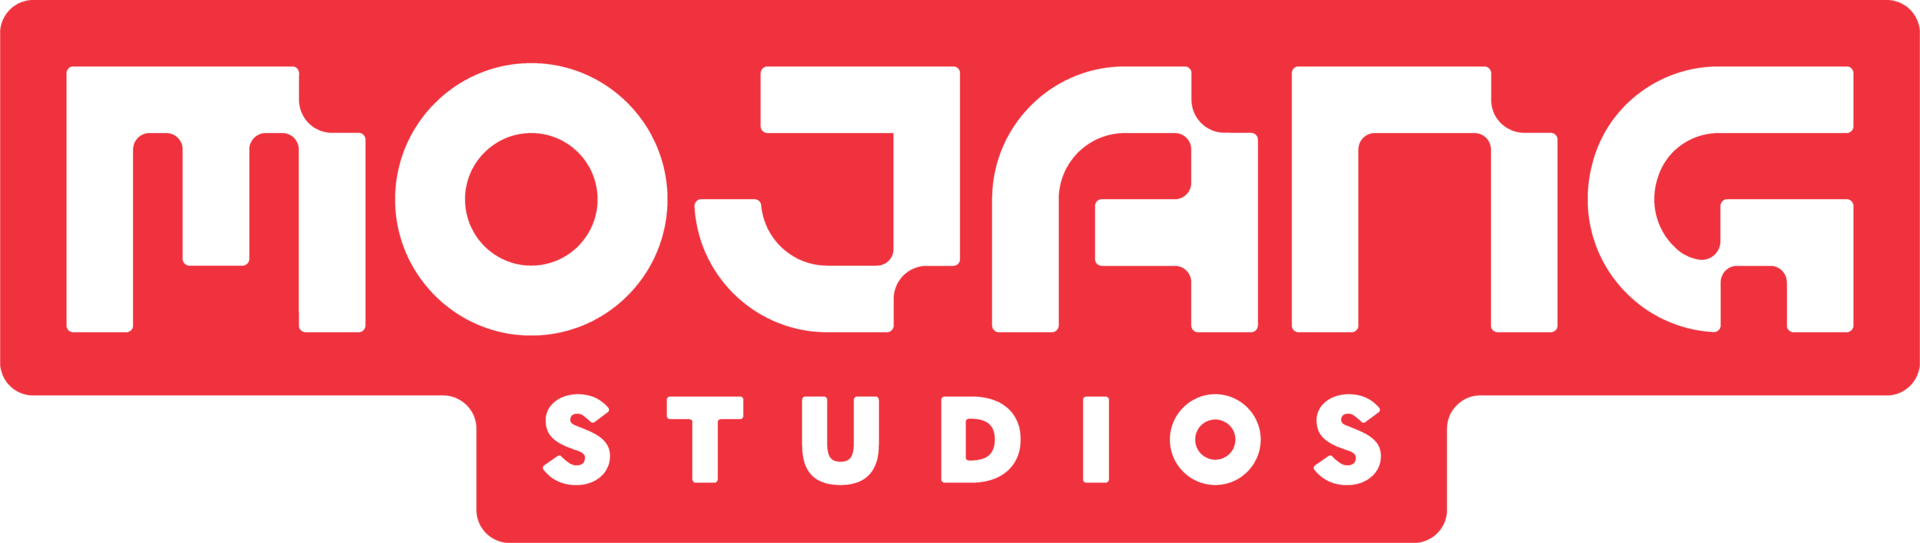 4J Studios - Wikipedia